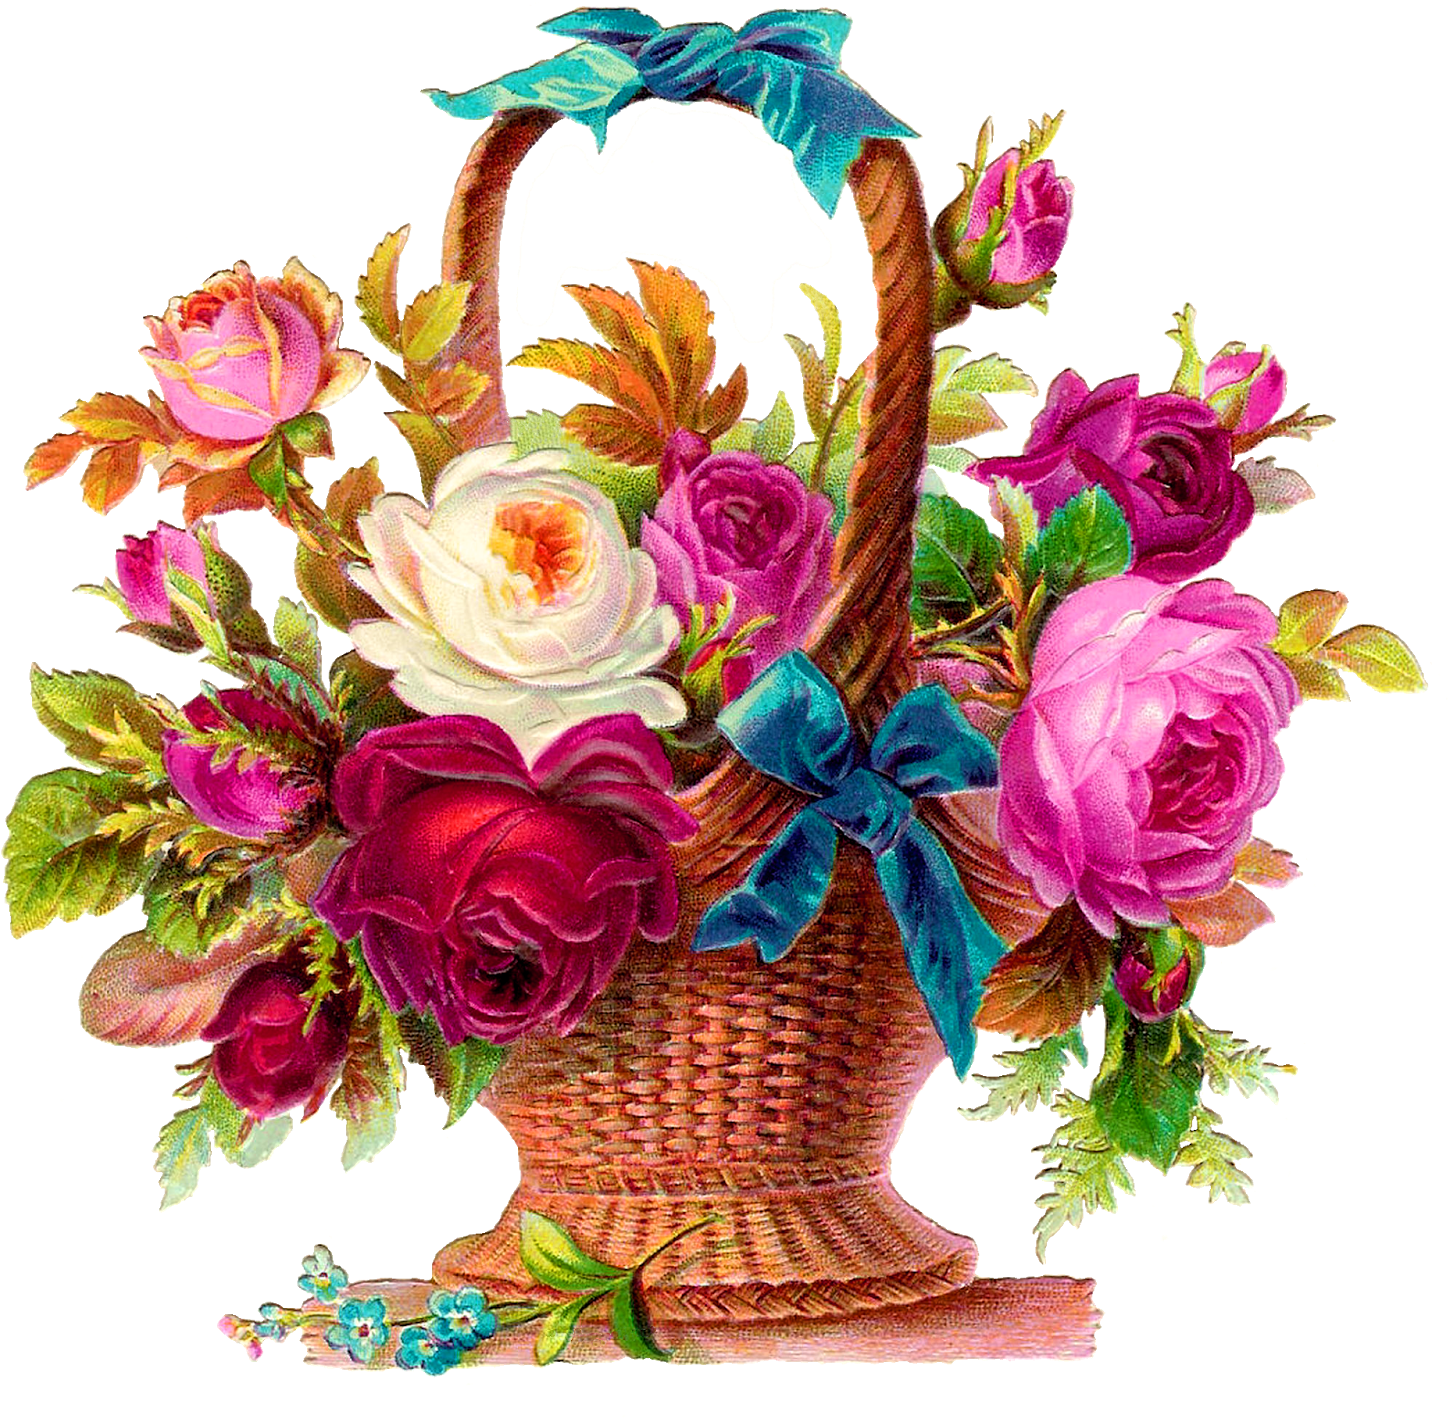 Digital Rose Flower Basket Download - Rose Flower Basket Dra